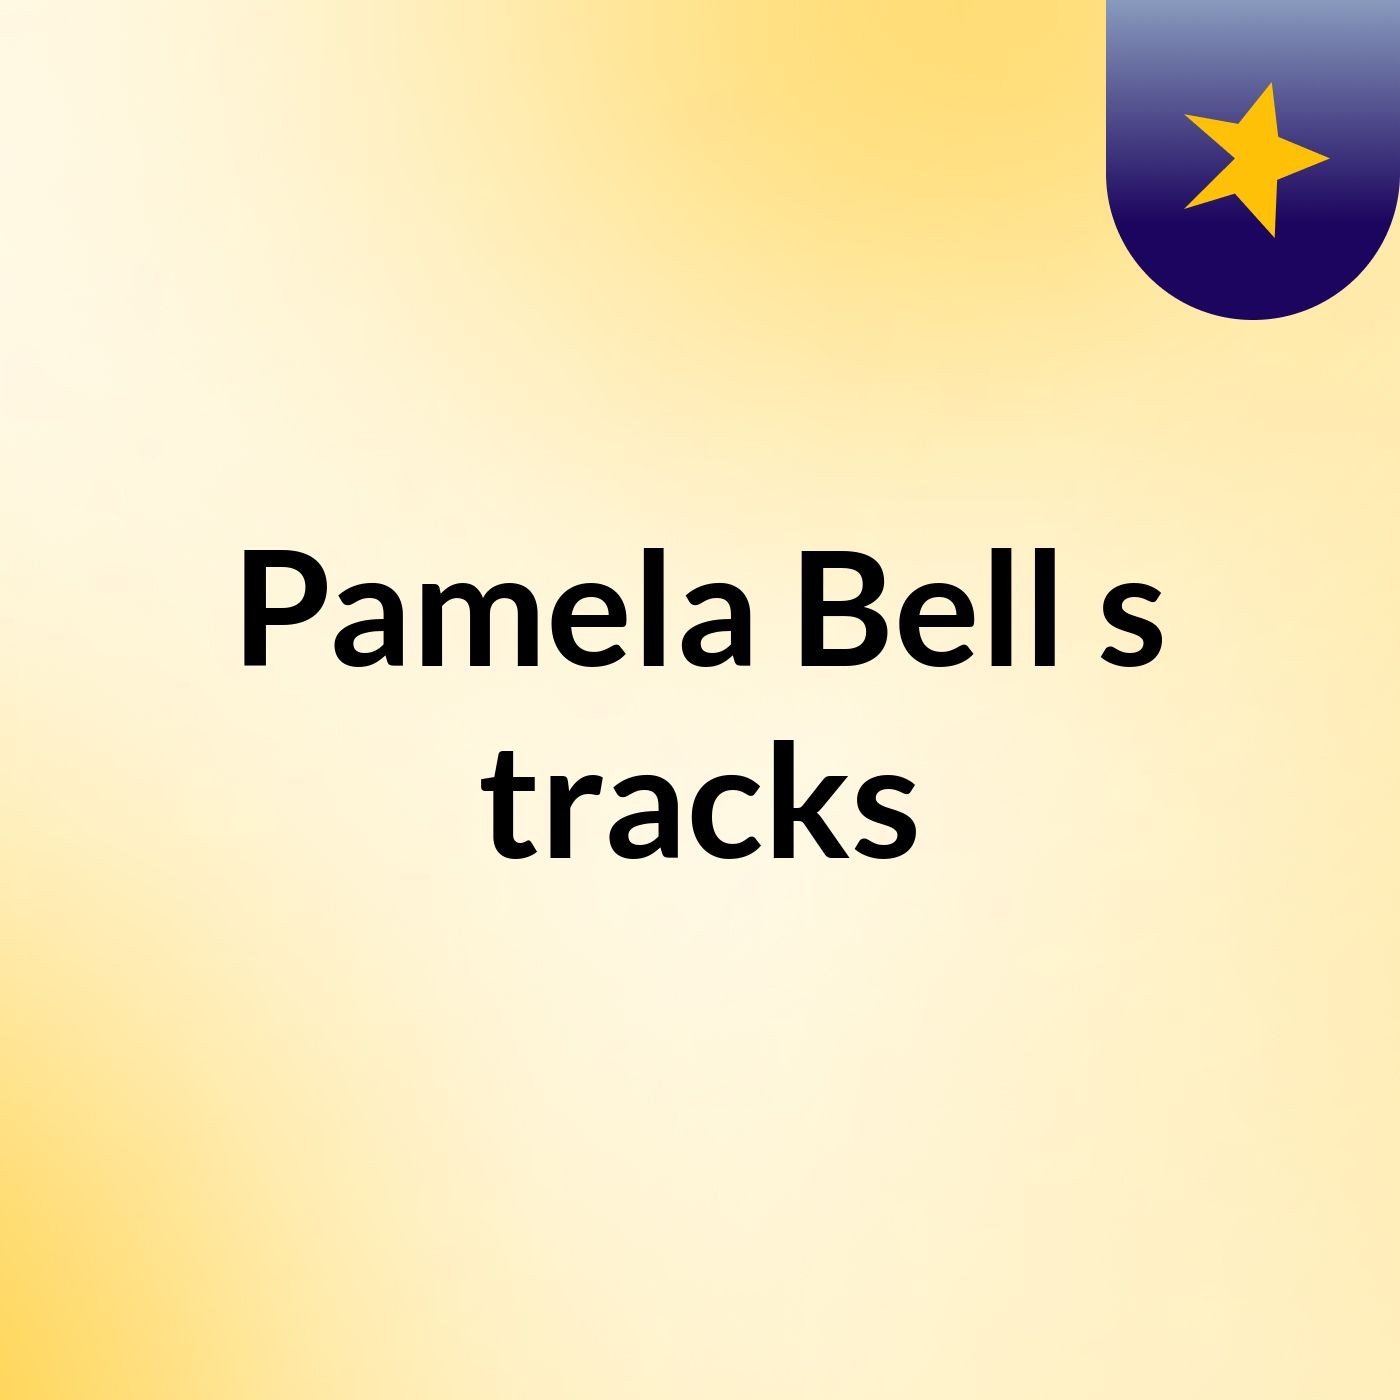 Pamela Bell's tracks